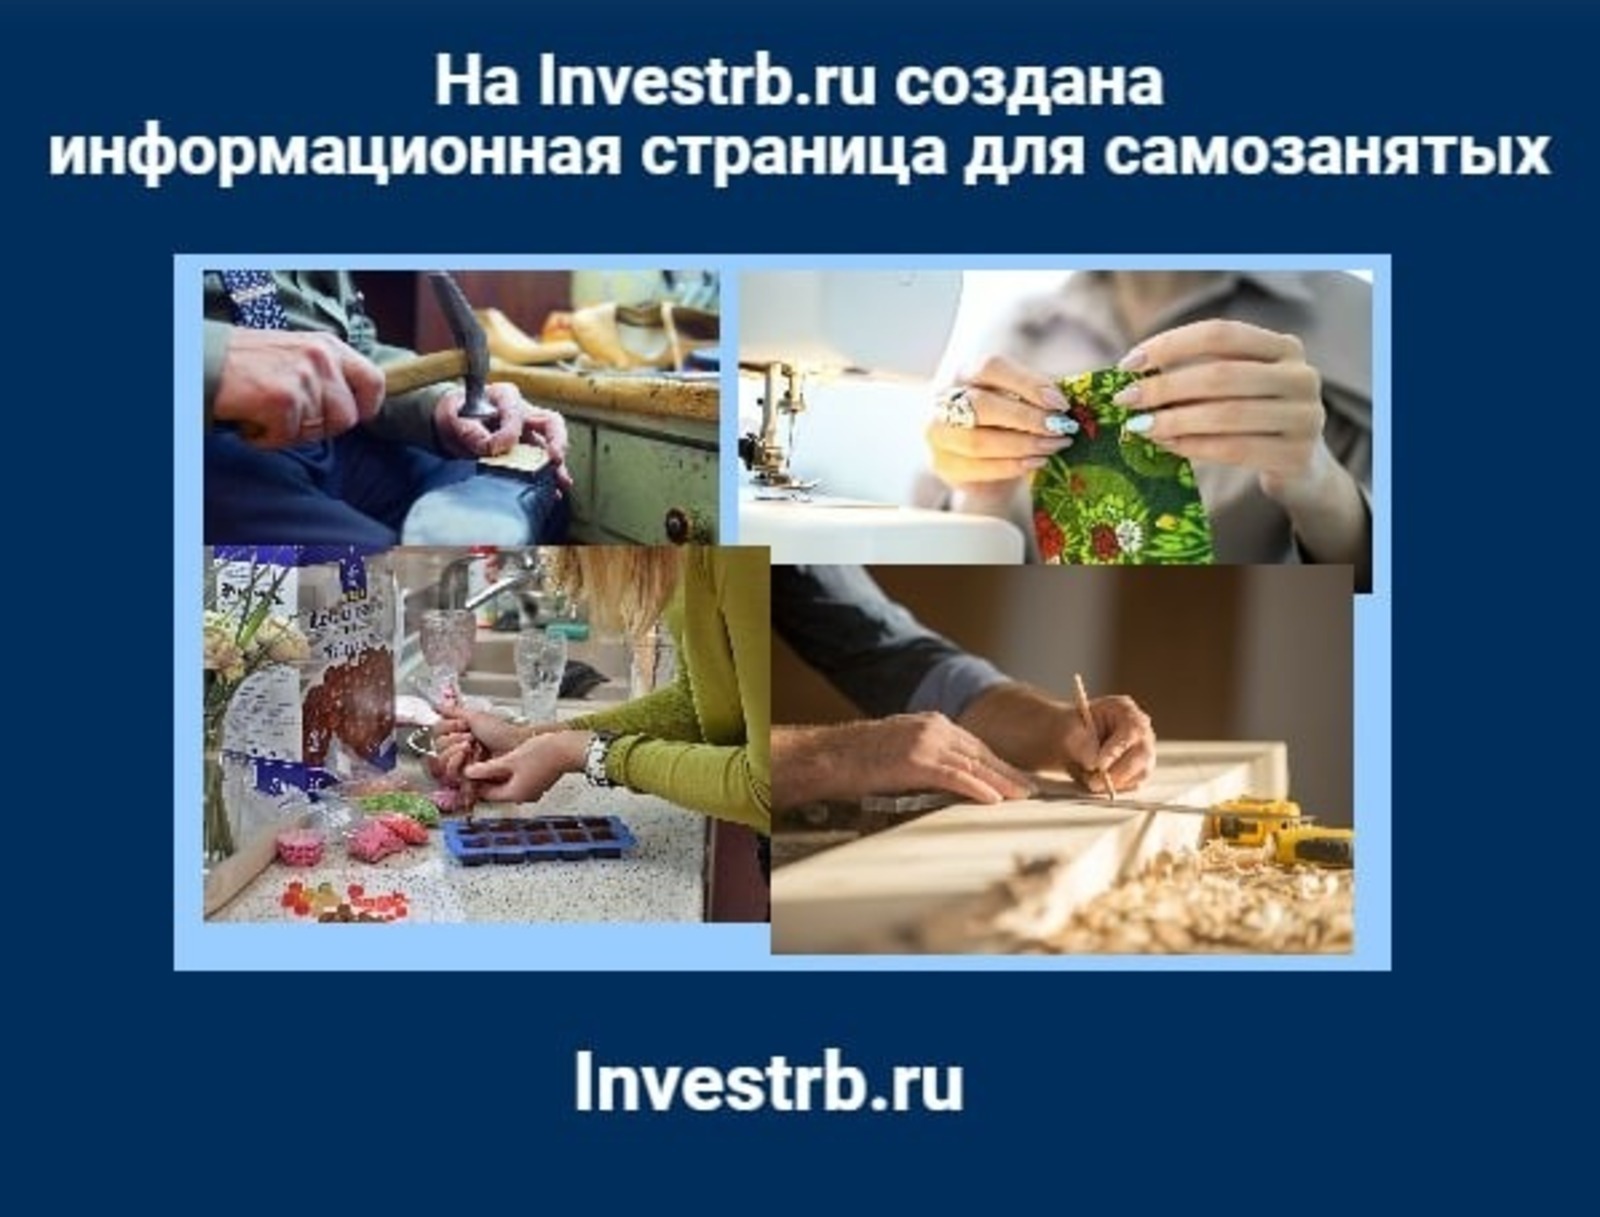 На портале Investrb.ru открыта информационная страница для зарегистрированных в статусе самозанятых